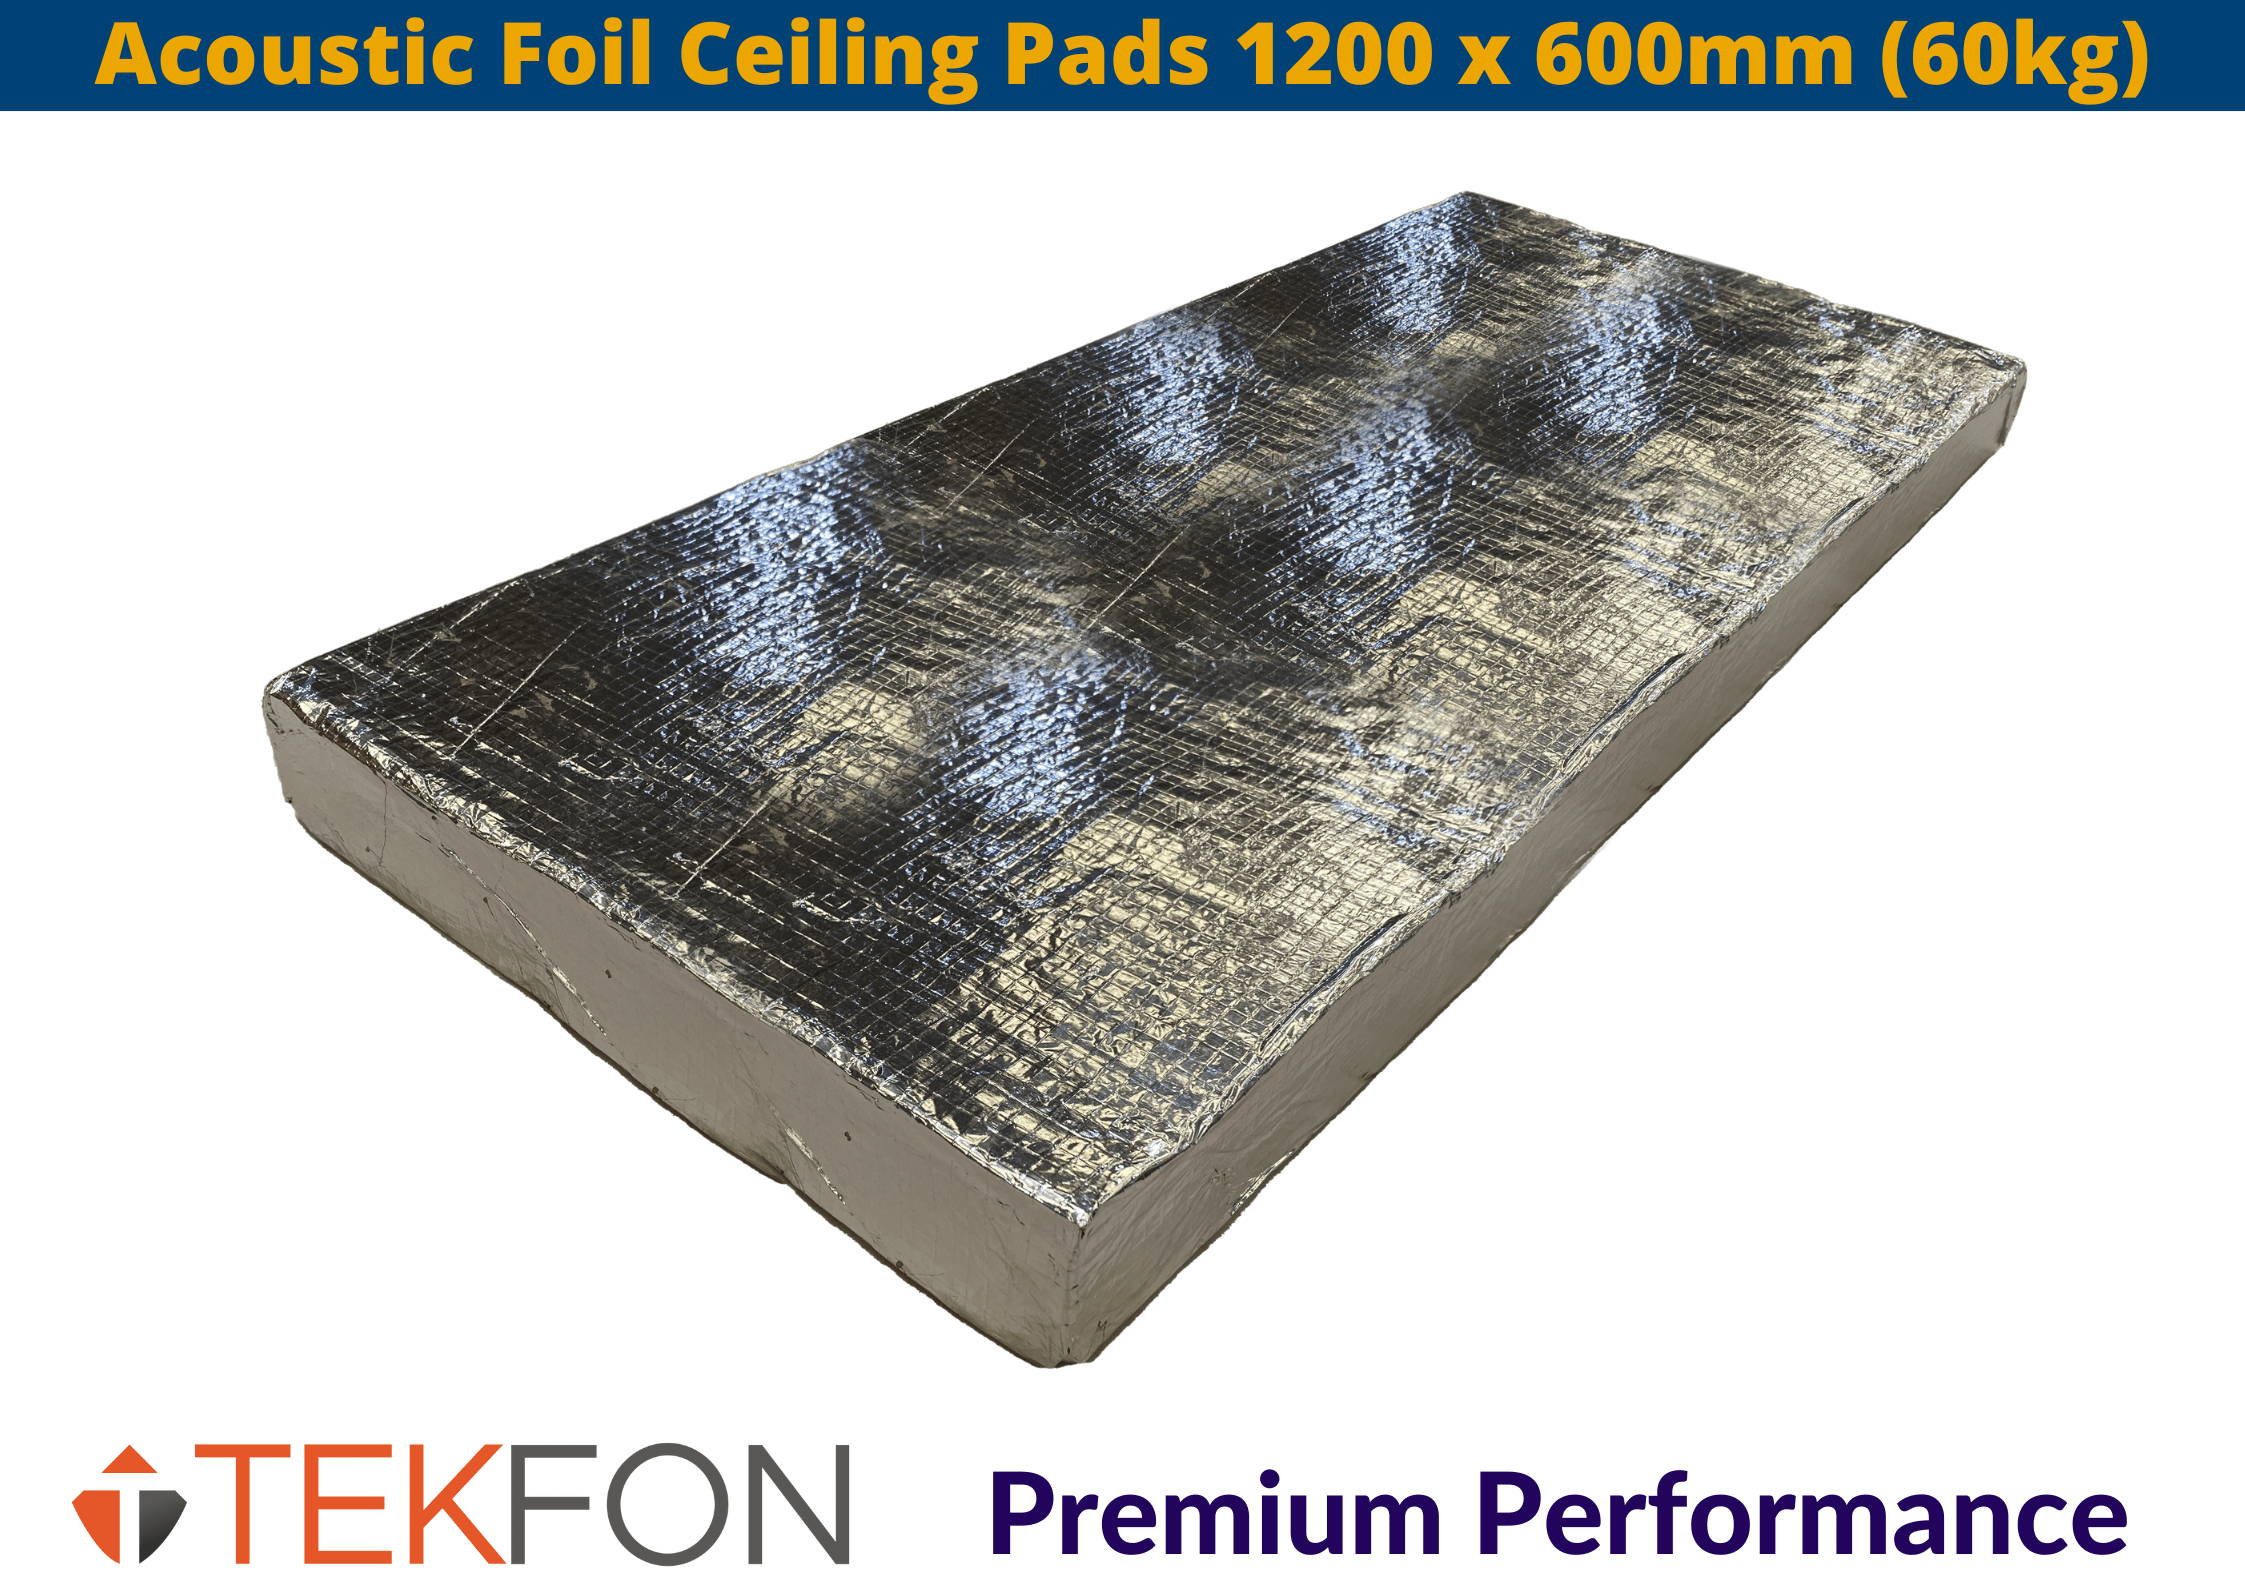 Tekfon Insulation Tekfon Acoustic Foil Ceiling Pads | 1200 x 600mm (60kgm3) Tekfon Acoustic Foil Ceiling Pads 1200 x 600mm (65kg) | insulationuk.co.uk